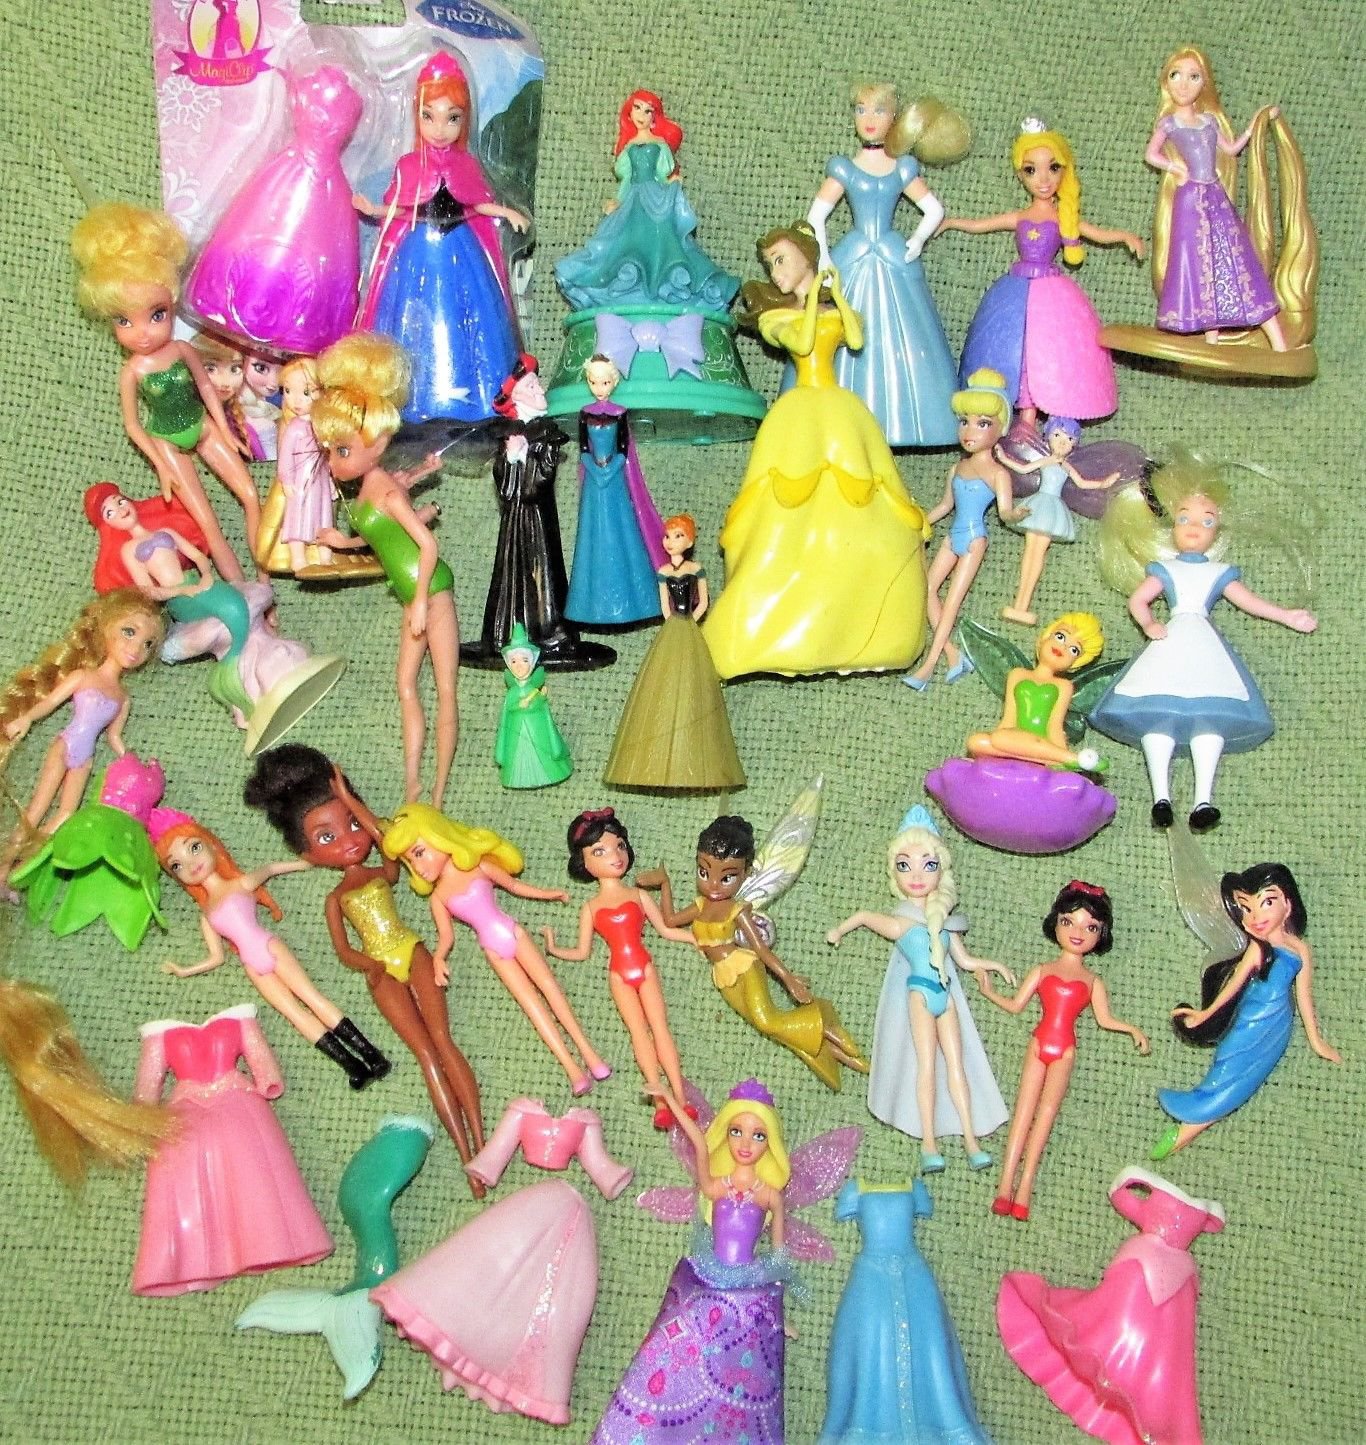 Disney Magiclip Princess Lot Of 36 Dresses Dolls Figures Polly Pocket Magic Clip 